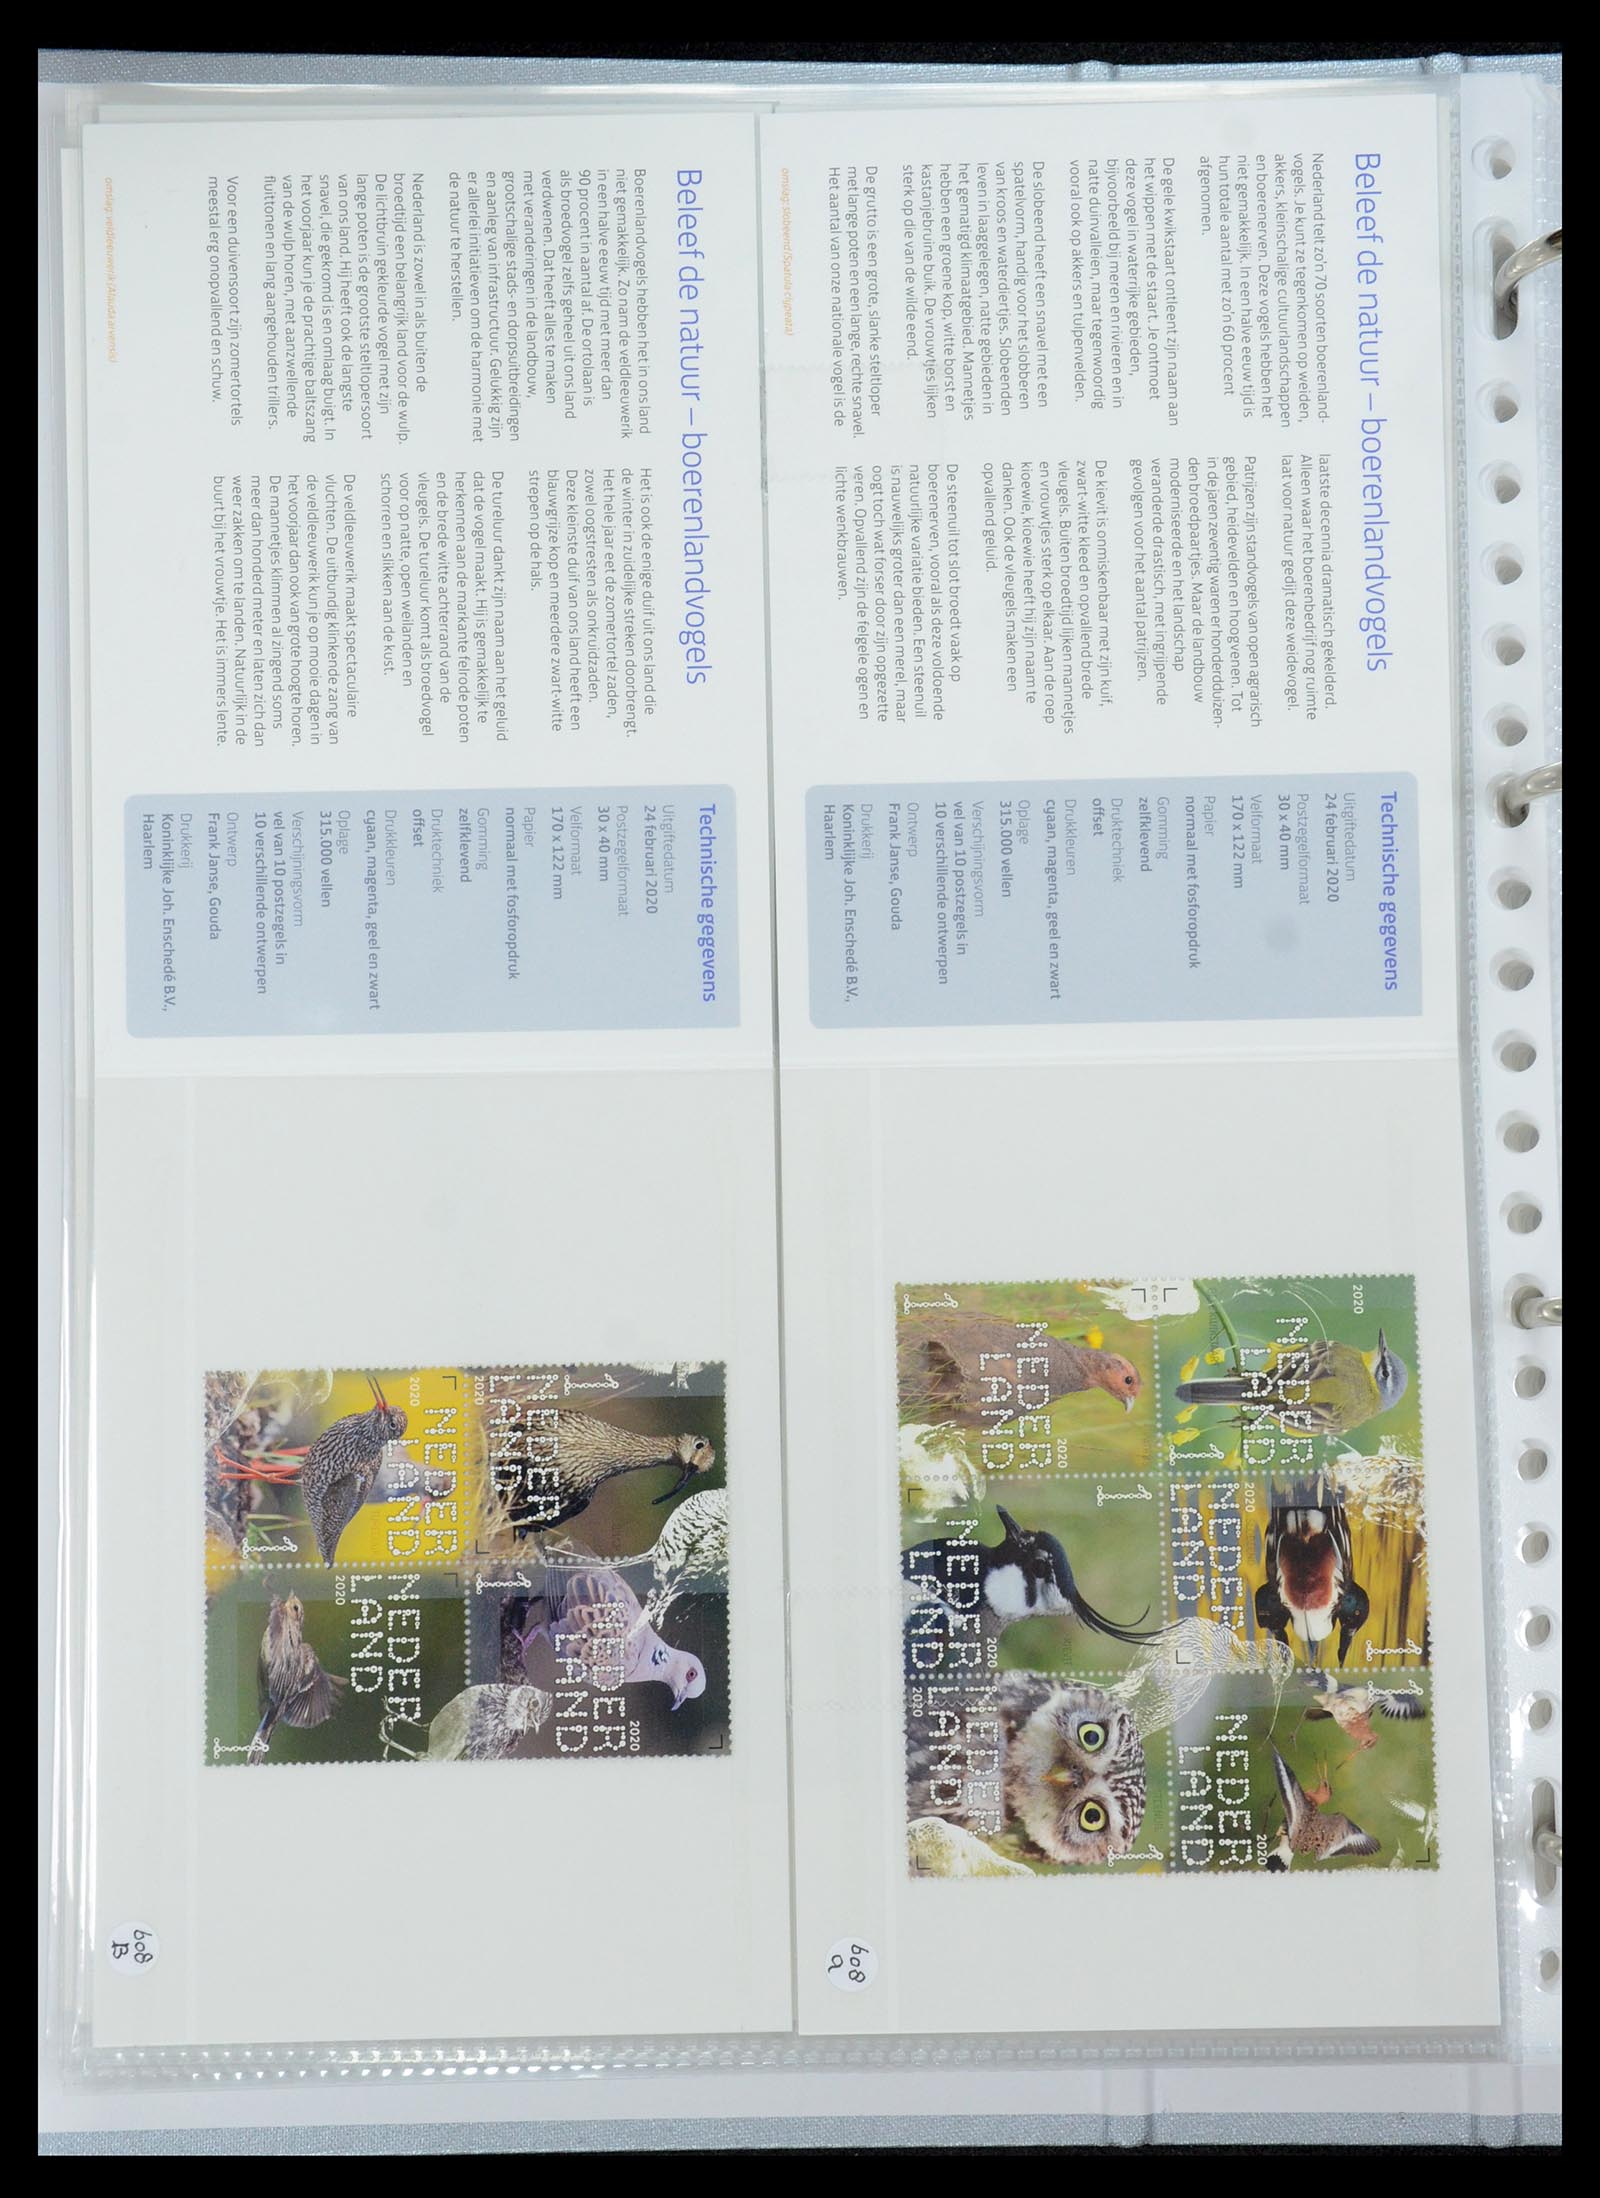 35692 369 - Stamp Collection 35692 Netherlands presentation packs 1982-2021!!